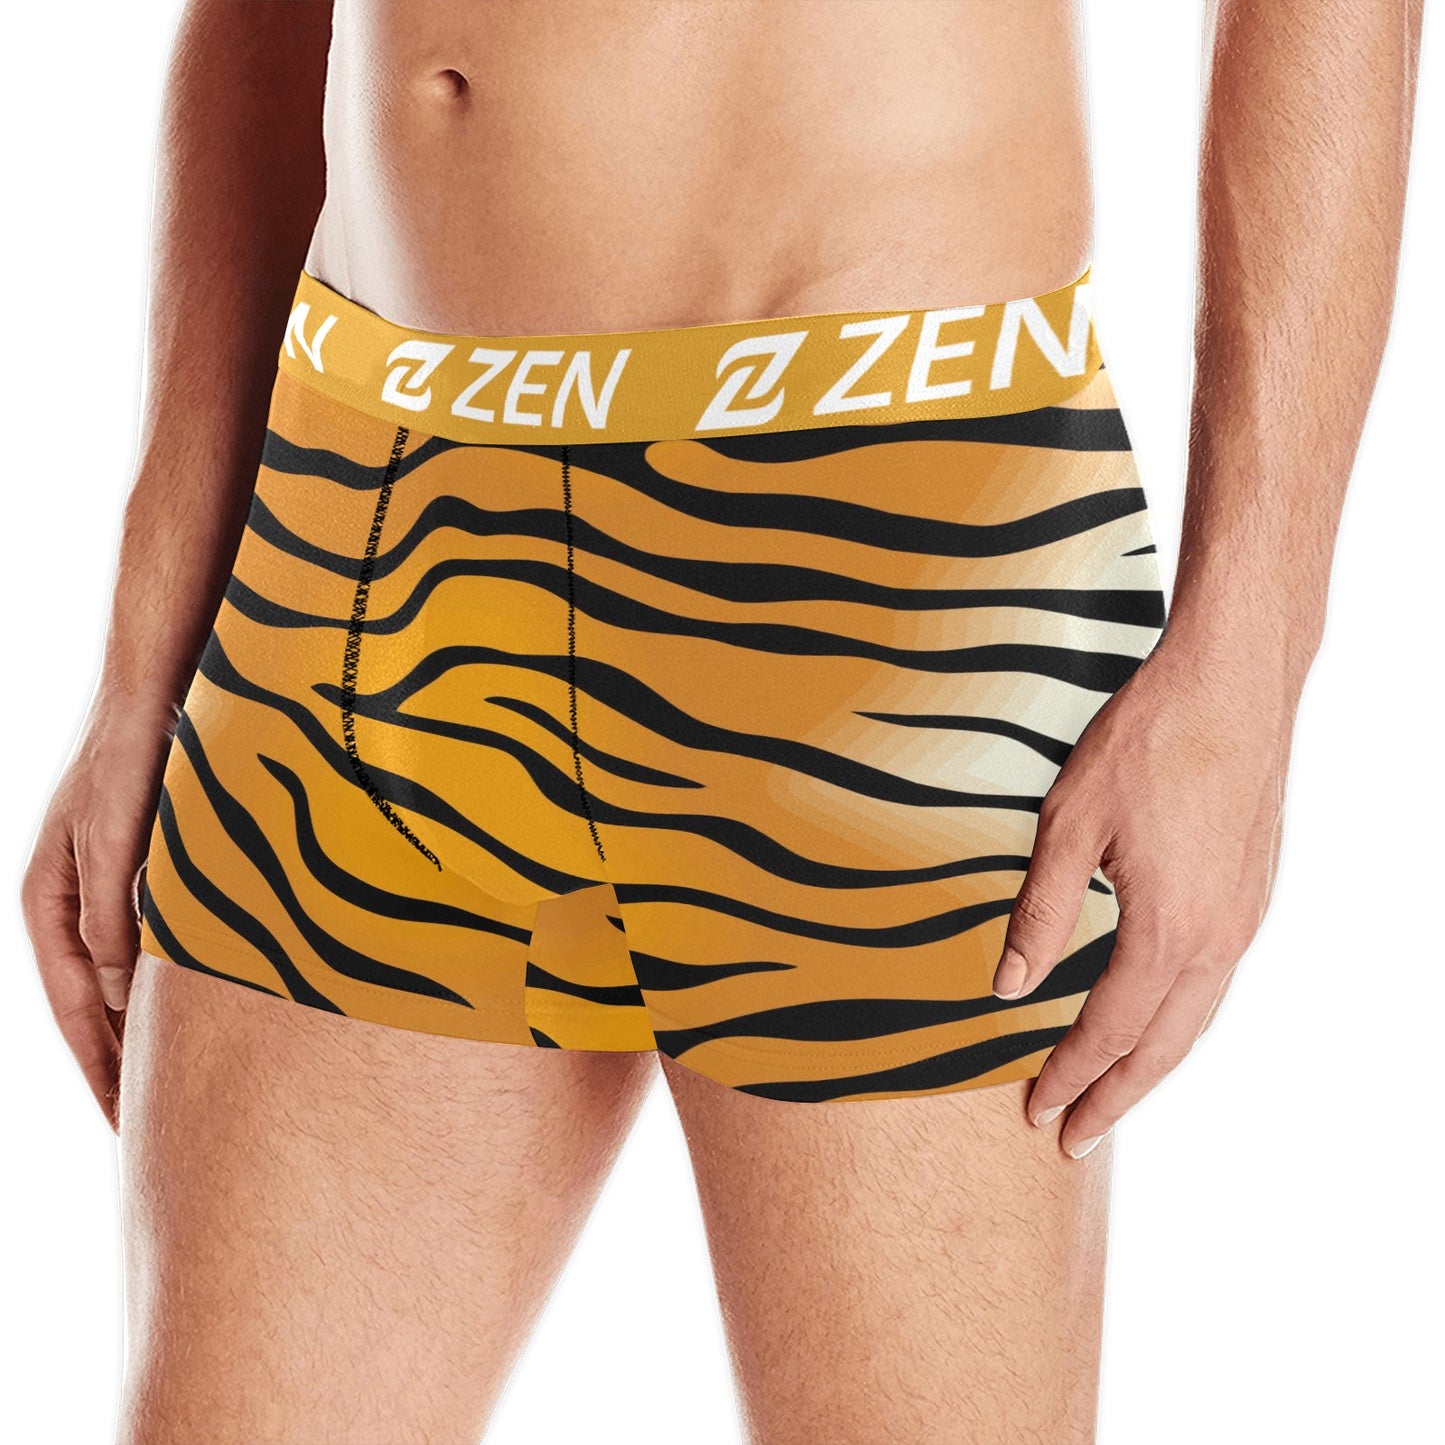 Zen Waistband - Tiger Stripes 1